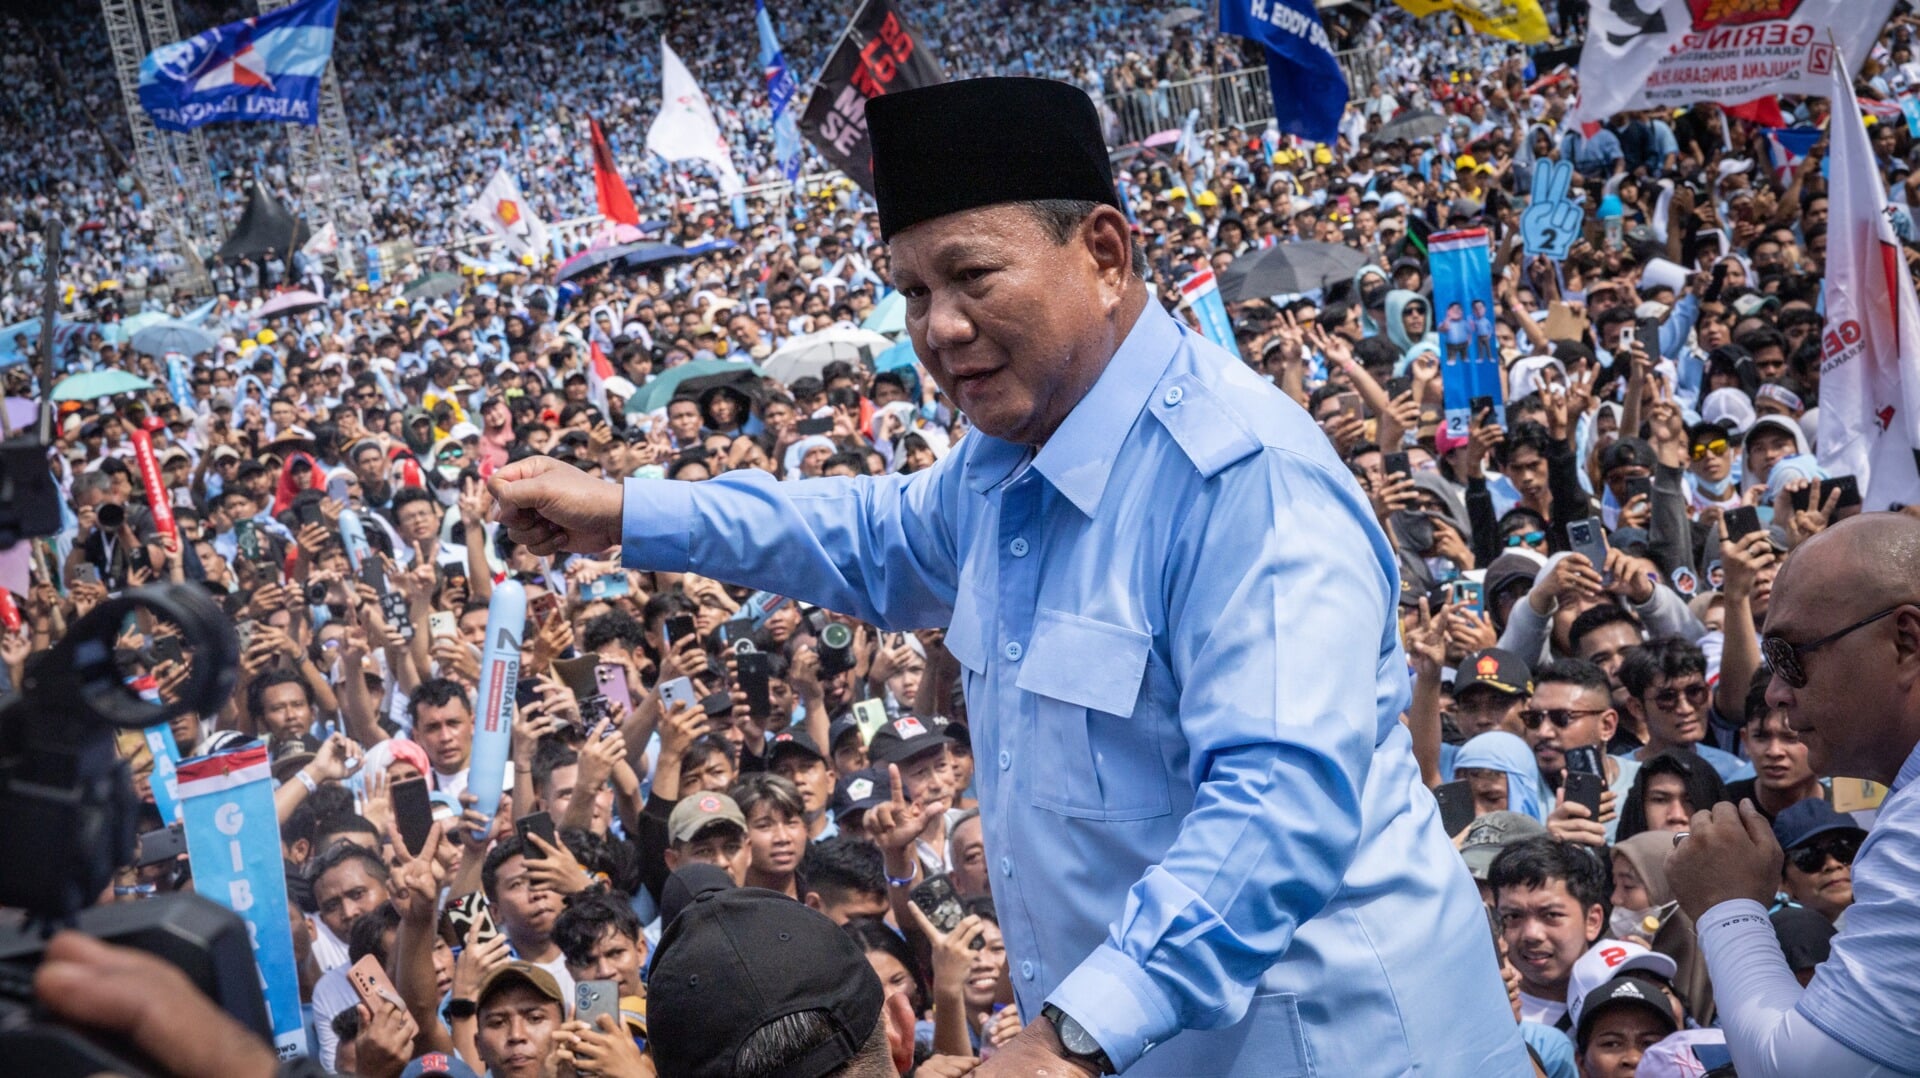 Presidentskandidaat Prabowo Subianto is immens populair onder de jongere bevolking.